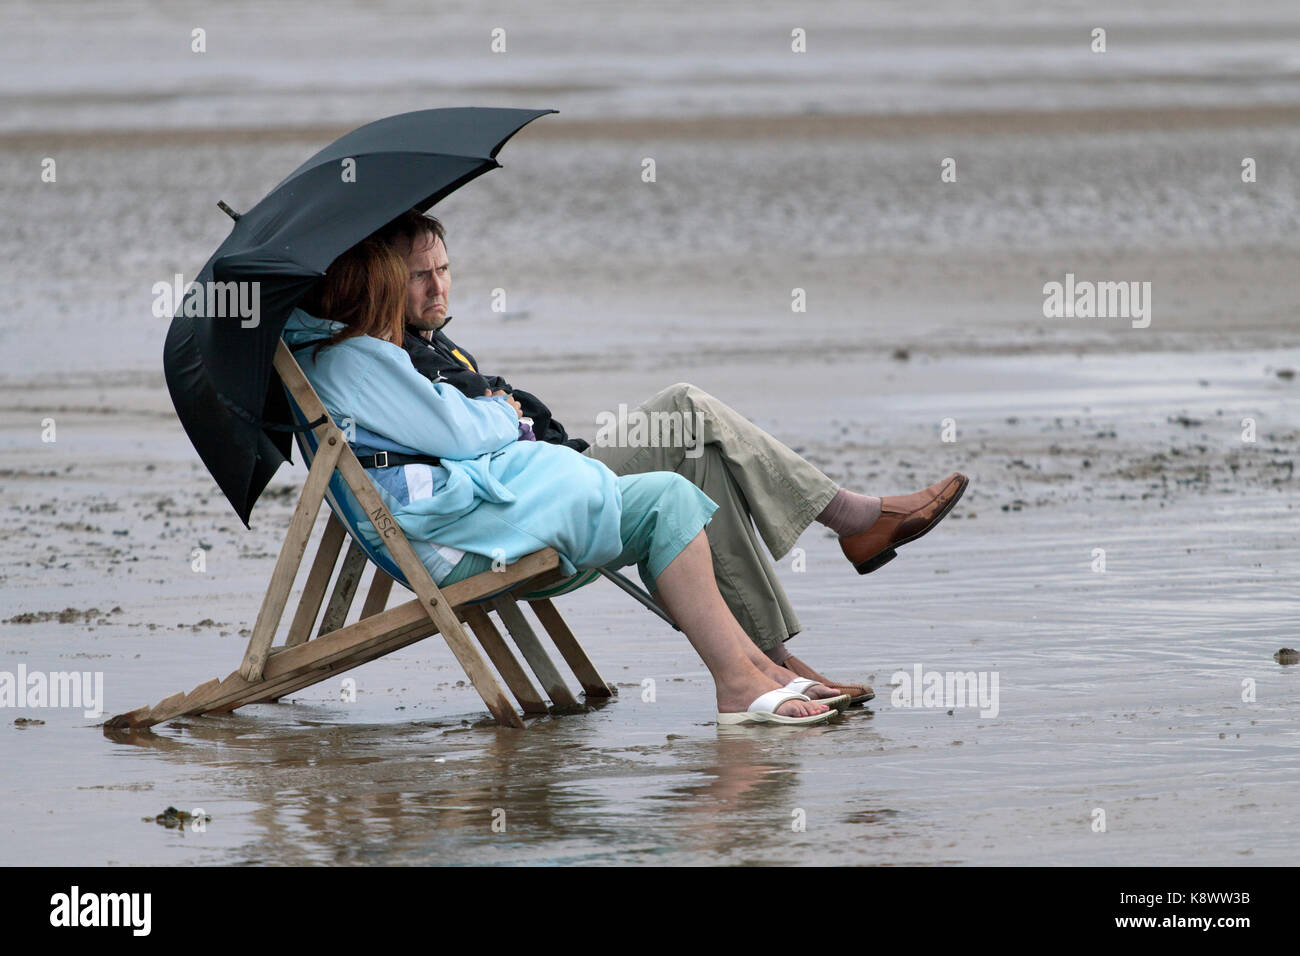 Ein Paar mittleren Alters saß in Liegestühlen am Strand bei einem regen Sturm. Beide tragen Kleider und die Stühle mit einem Regenschirm abgedeckt Stockfoto